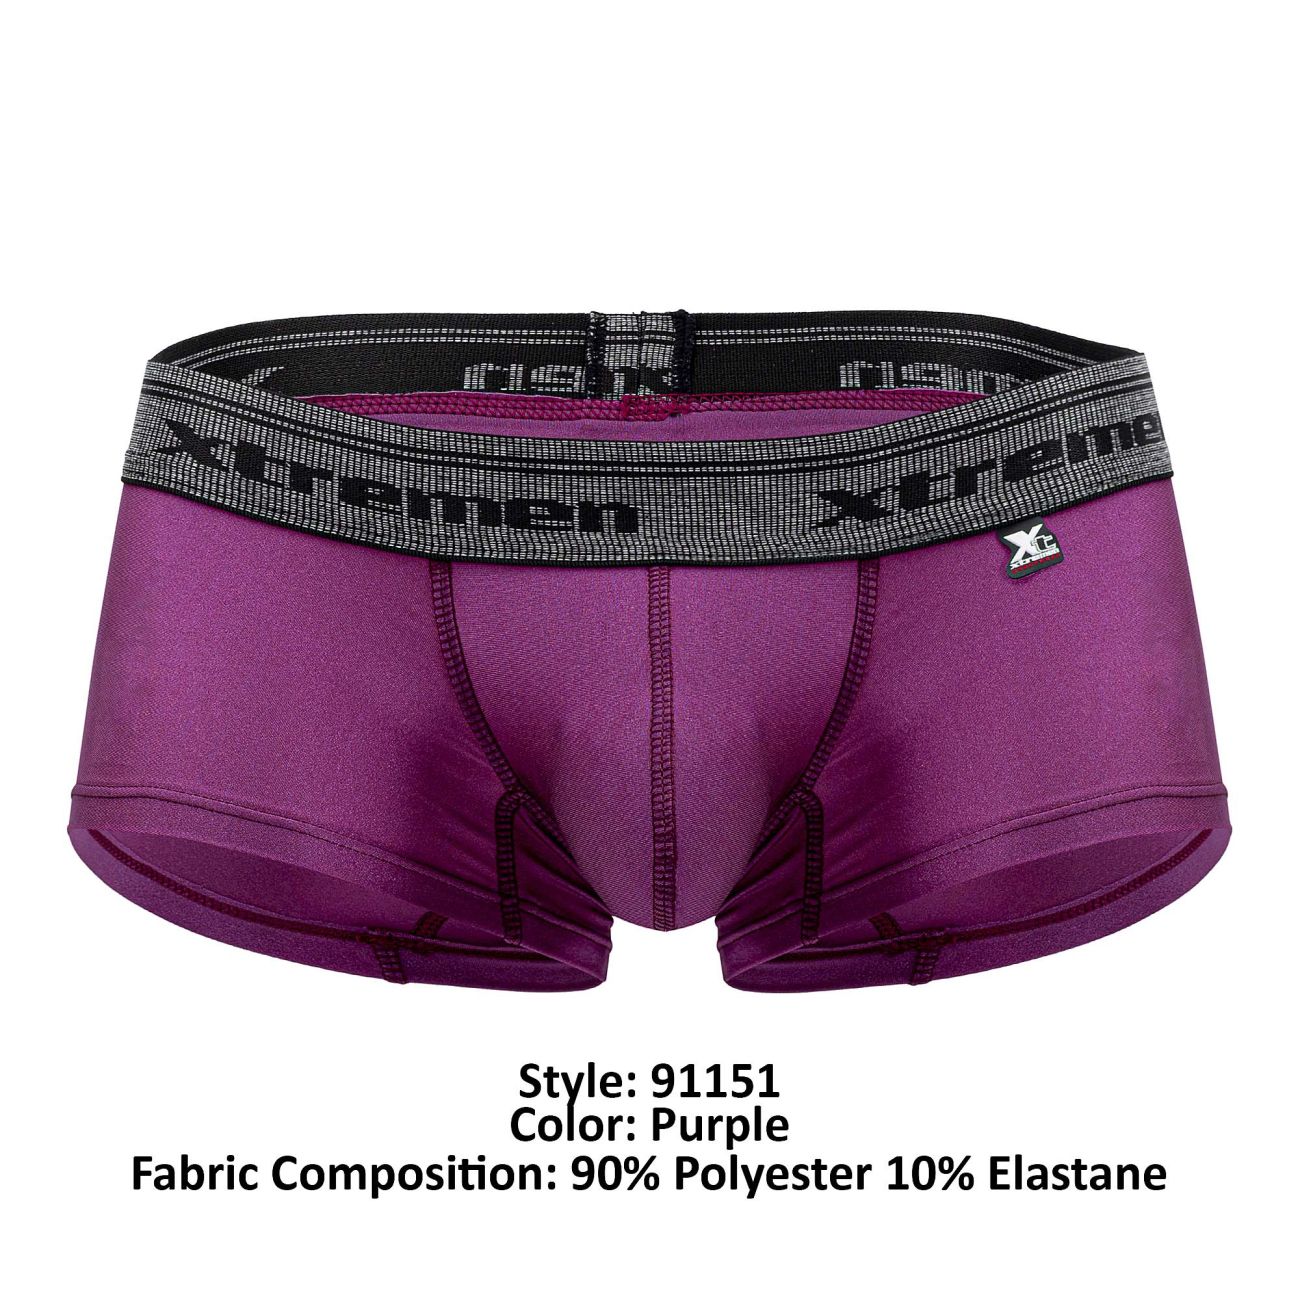 Xtremen 91151 Destellante Trunks Purple